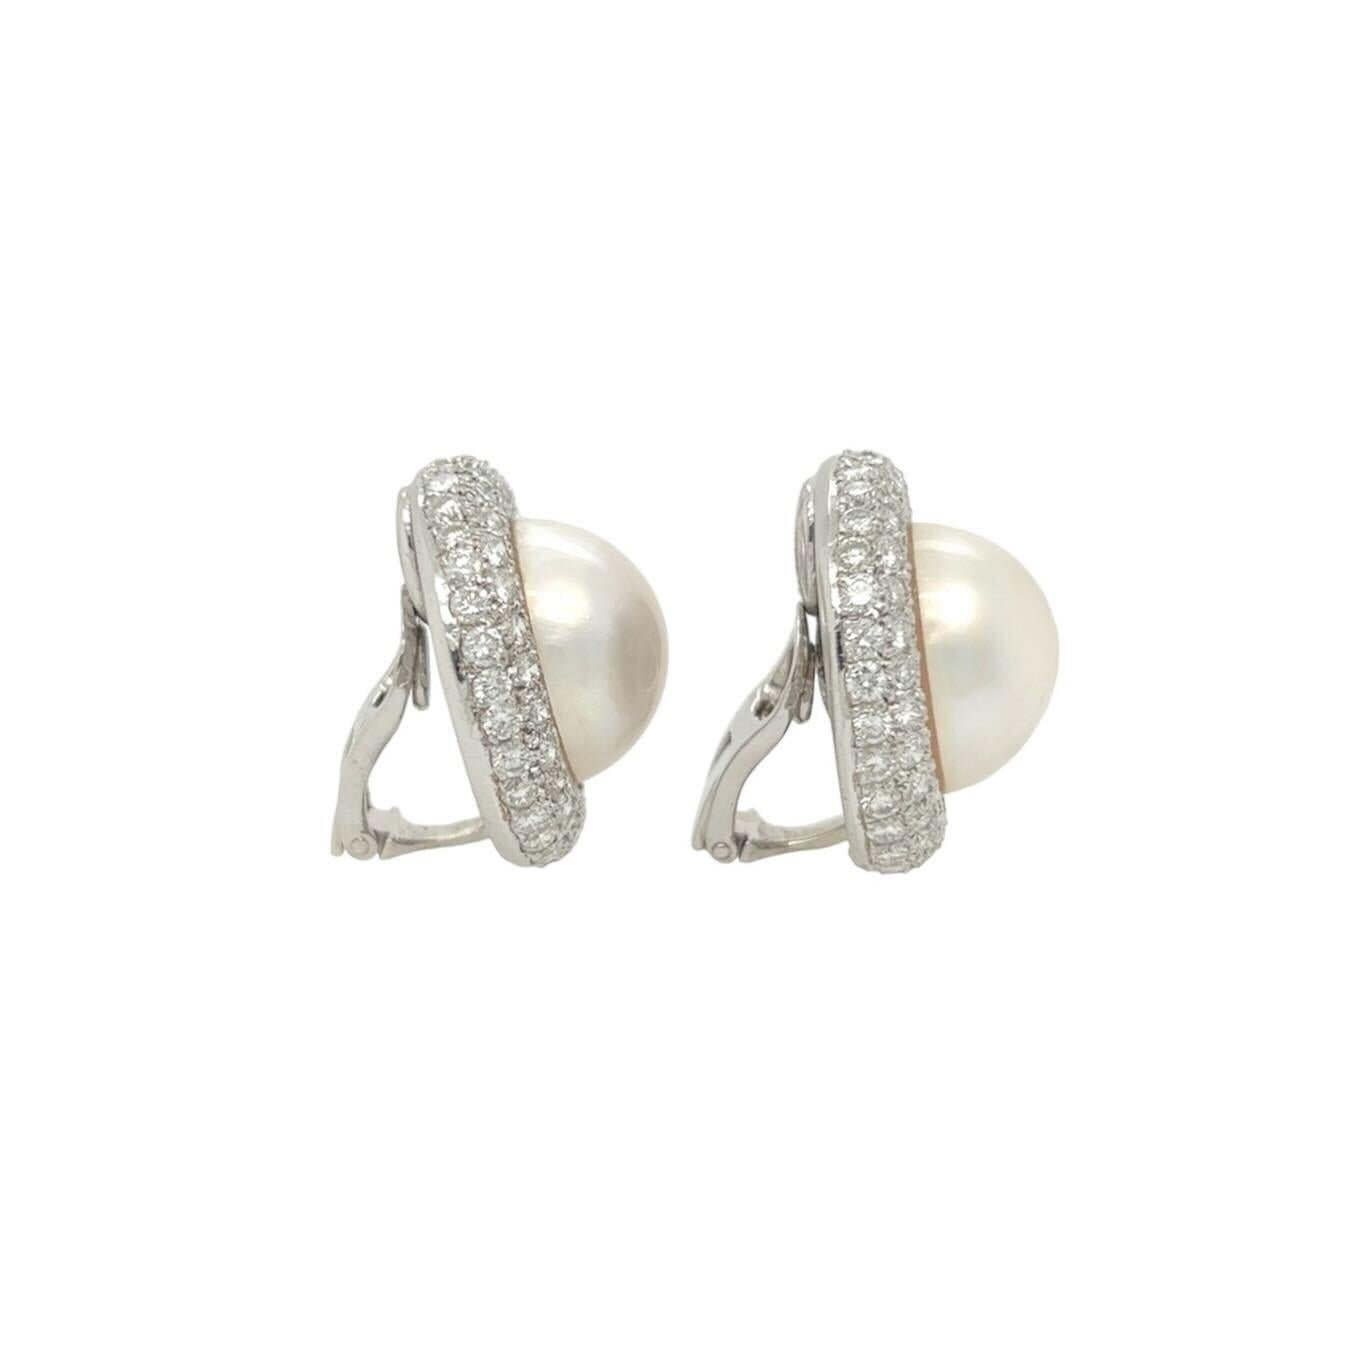 Ein Paar Ohrclips aus Platin, Perlen und Diamanten.  Jeder Ohrclip enthält eine ca. 16,4 mm große Mabe-Perle in einem konvexen, kreisförmigen Rahmen, der mit ca. sechsundachtzig runden Diamanten im Brillantschliff besetzt ist.  Gesamtgewicht der